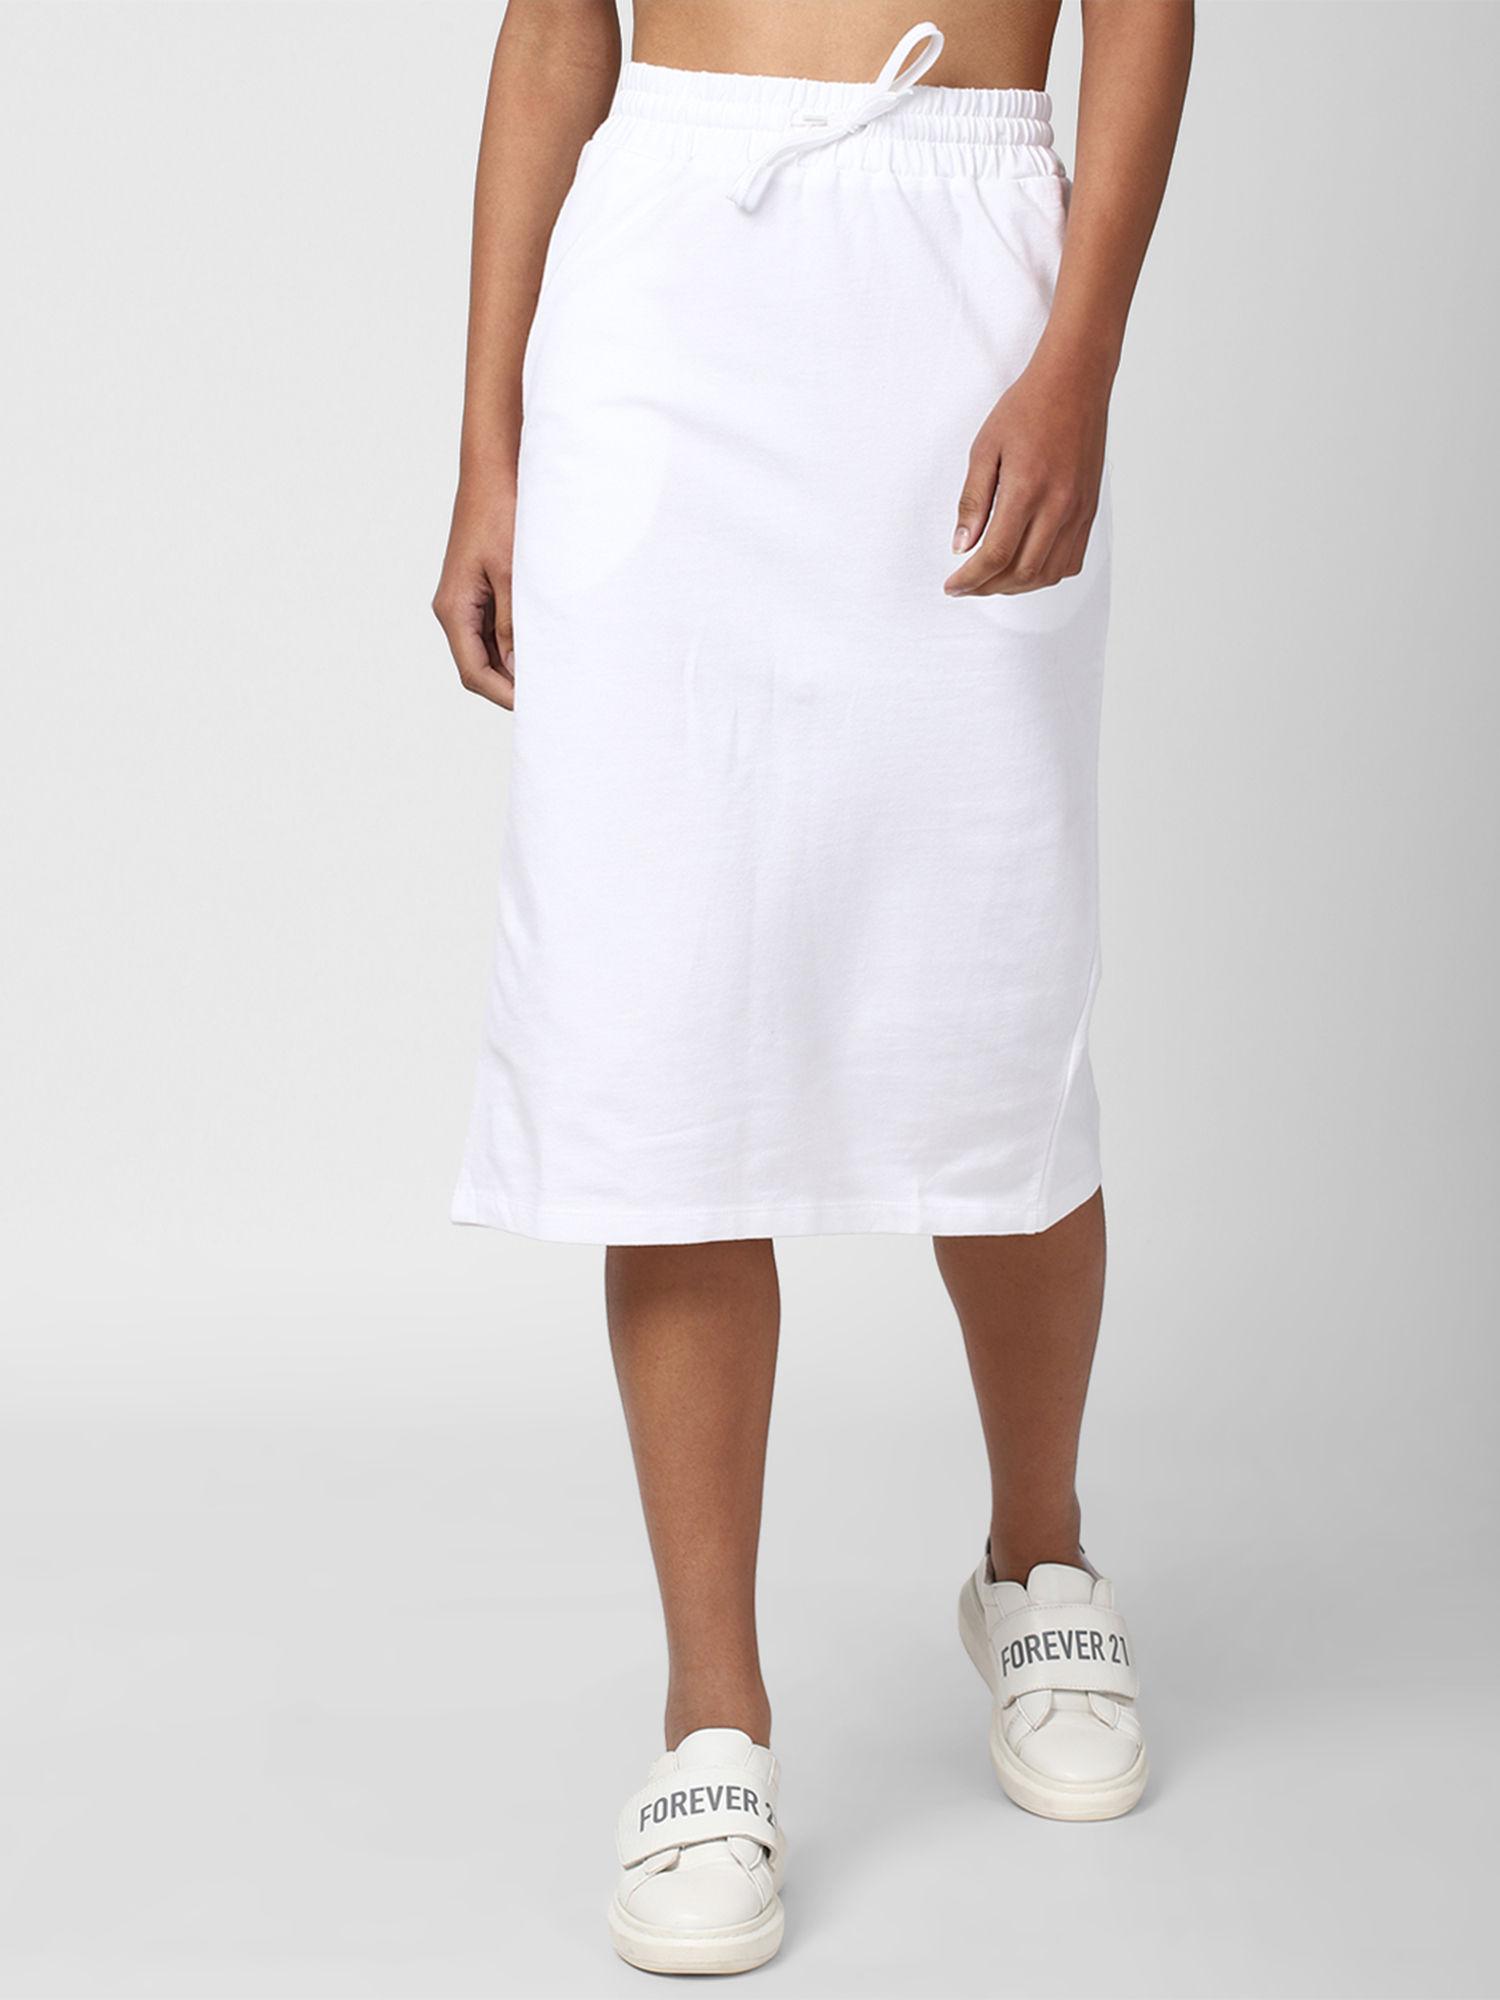 white solid skirt